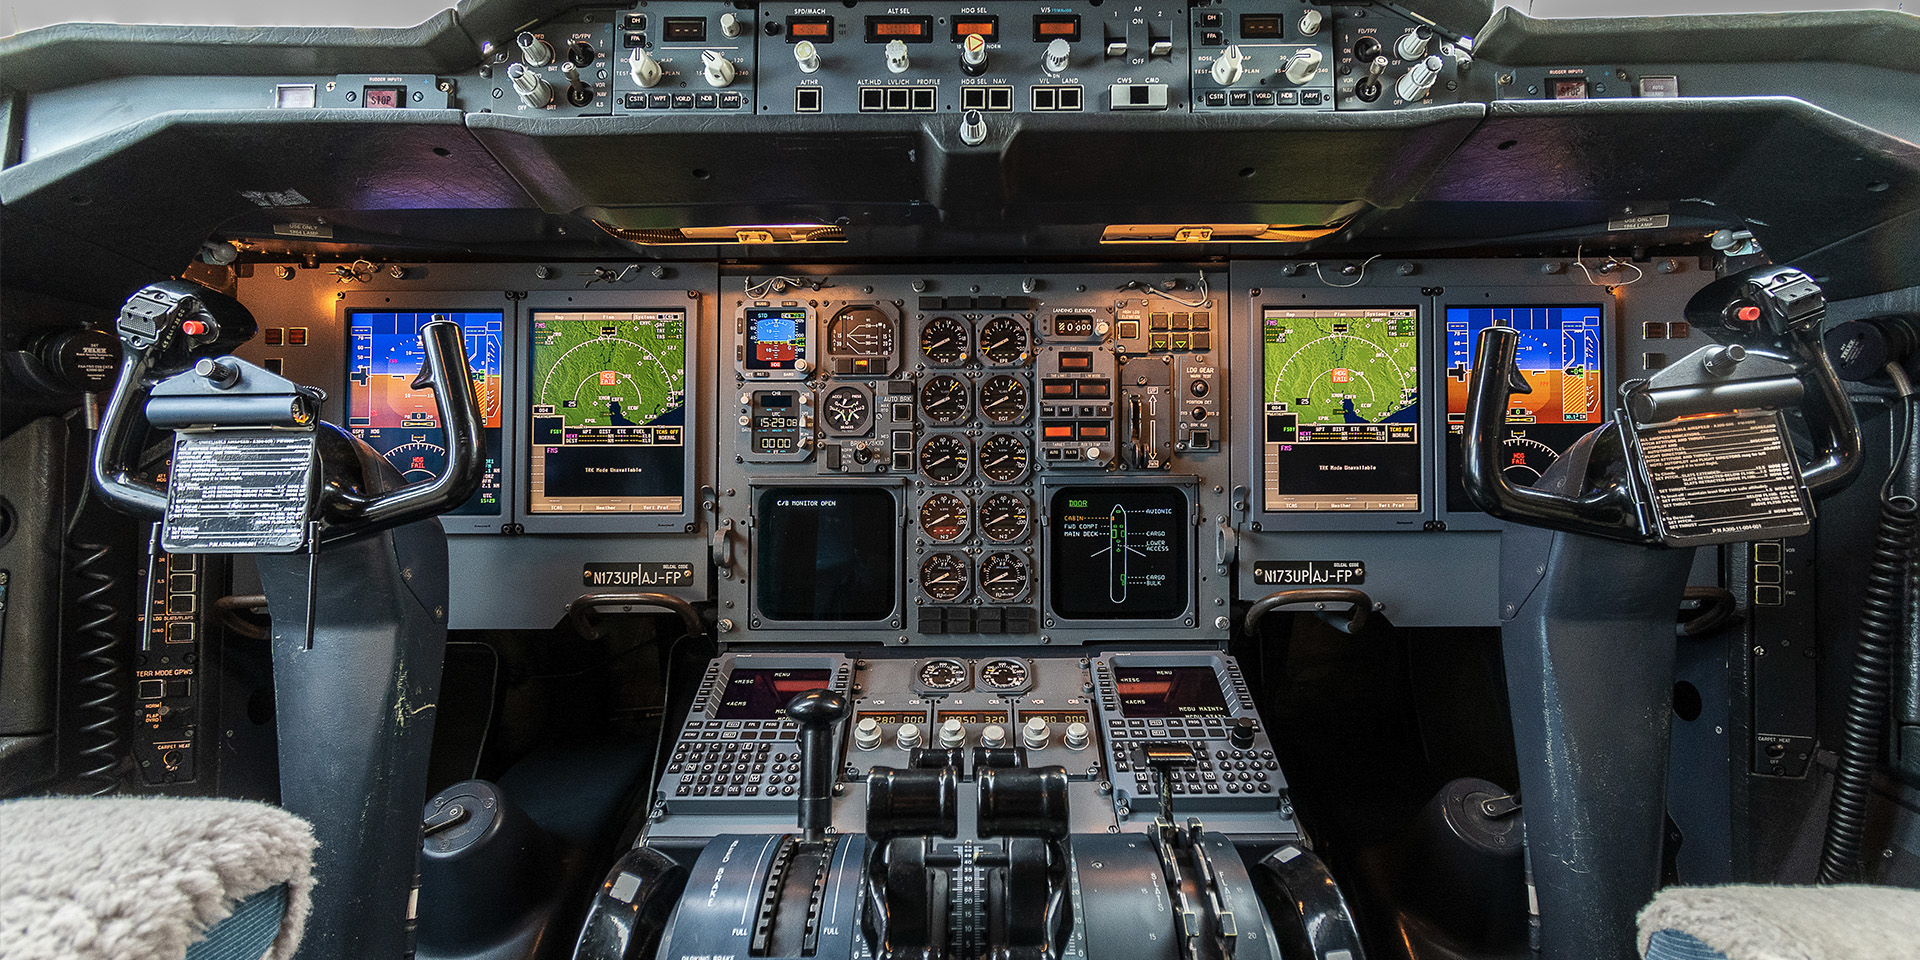 Ups ユナイテッド パーセル サービス コックピットシステムがアップグレードされたa300の初号機を受領 Sky Budget スカイバジェット